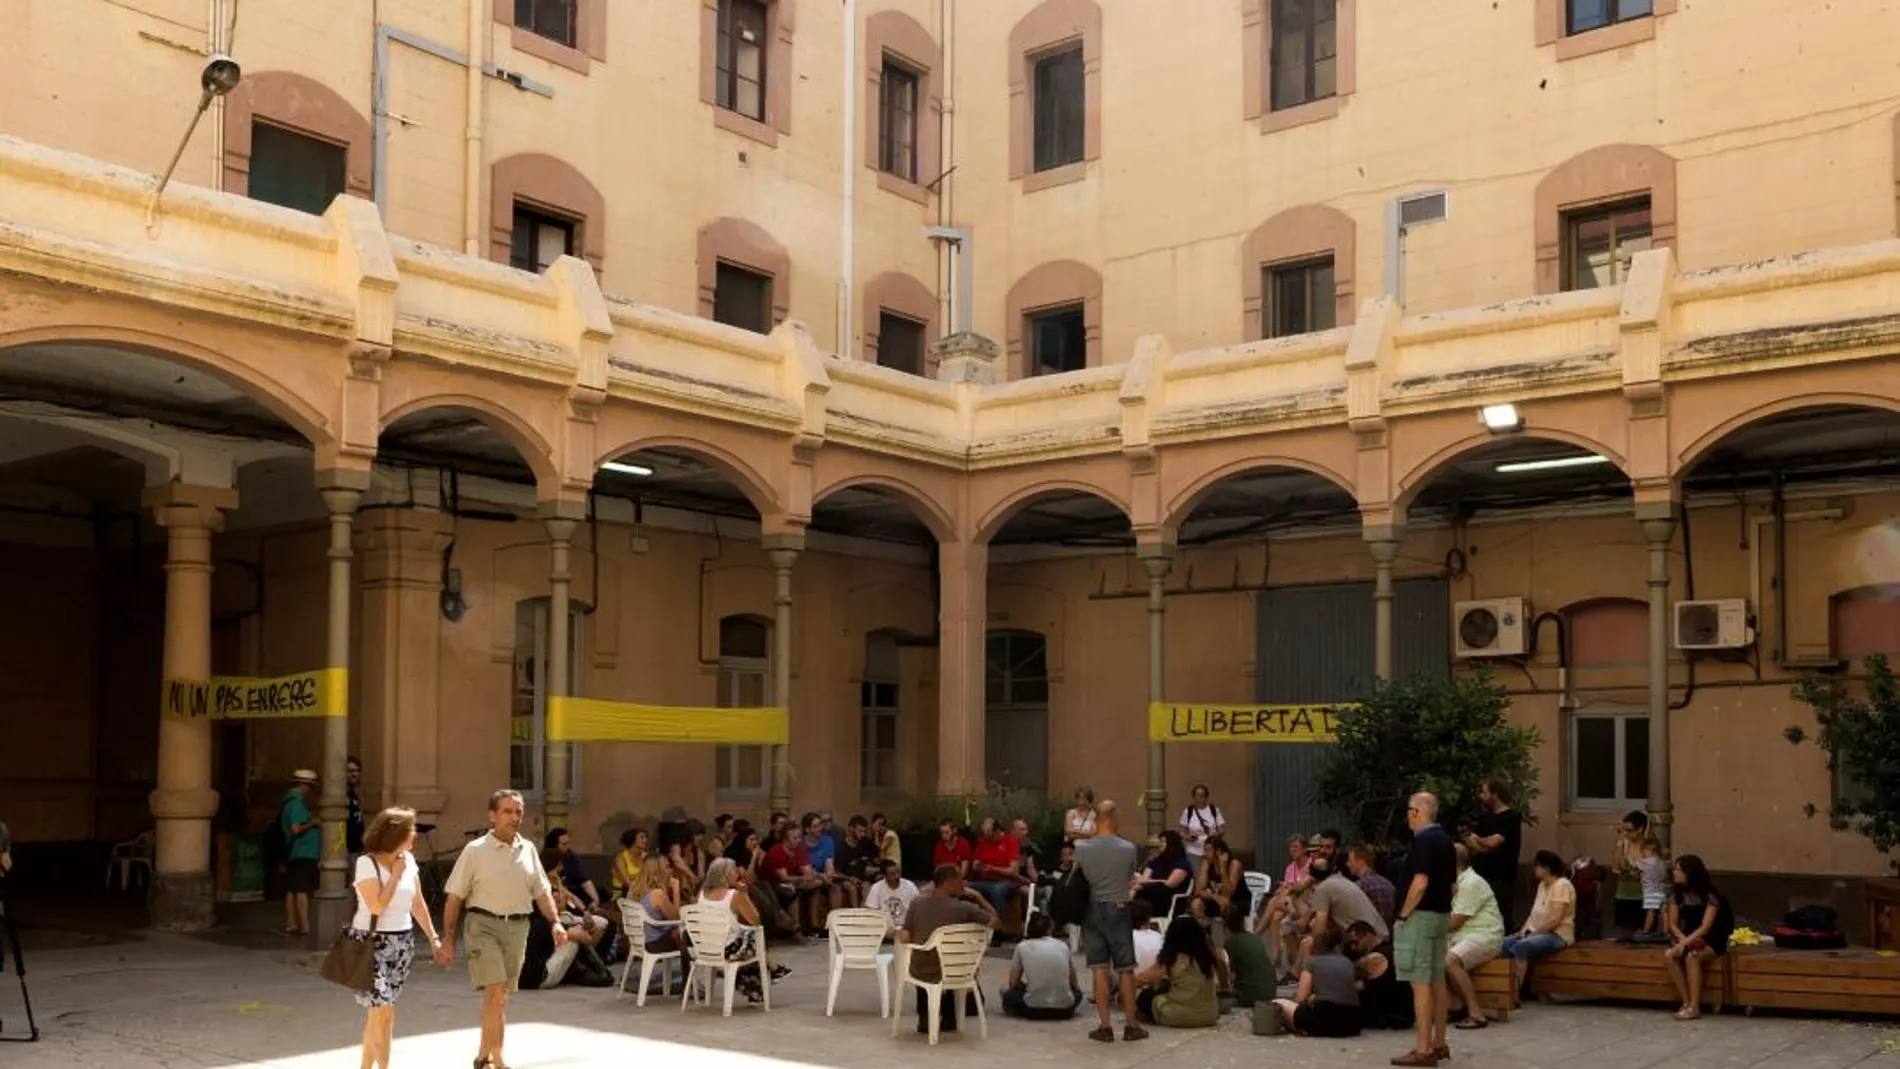 Vista del interior de la antigua cárcel Modelo de Barcelona que ayer "ocuparon"los activistas de los Comités de Defensa de la República (CDR)/ Efe